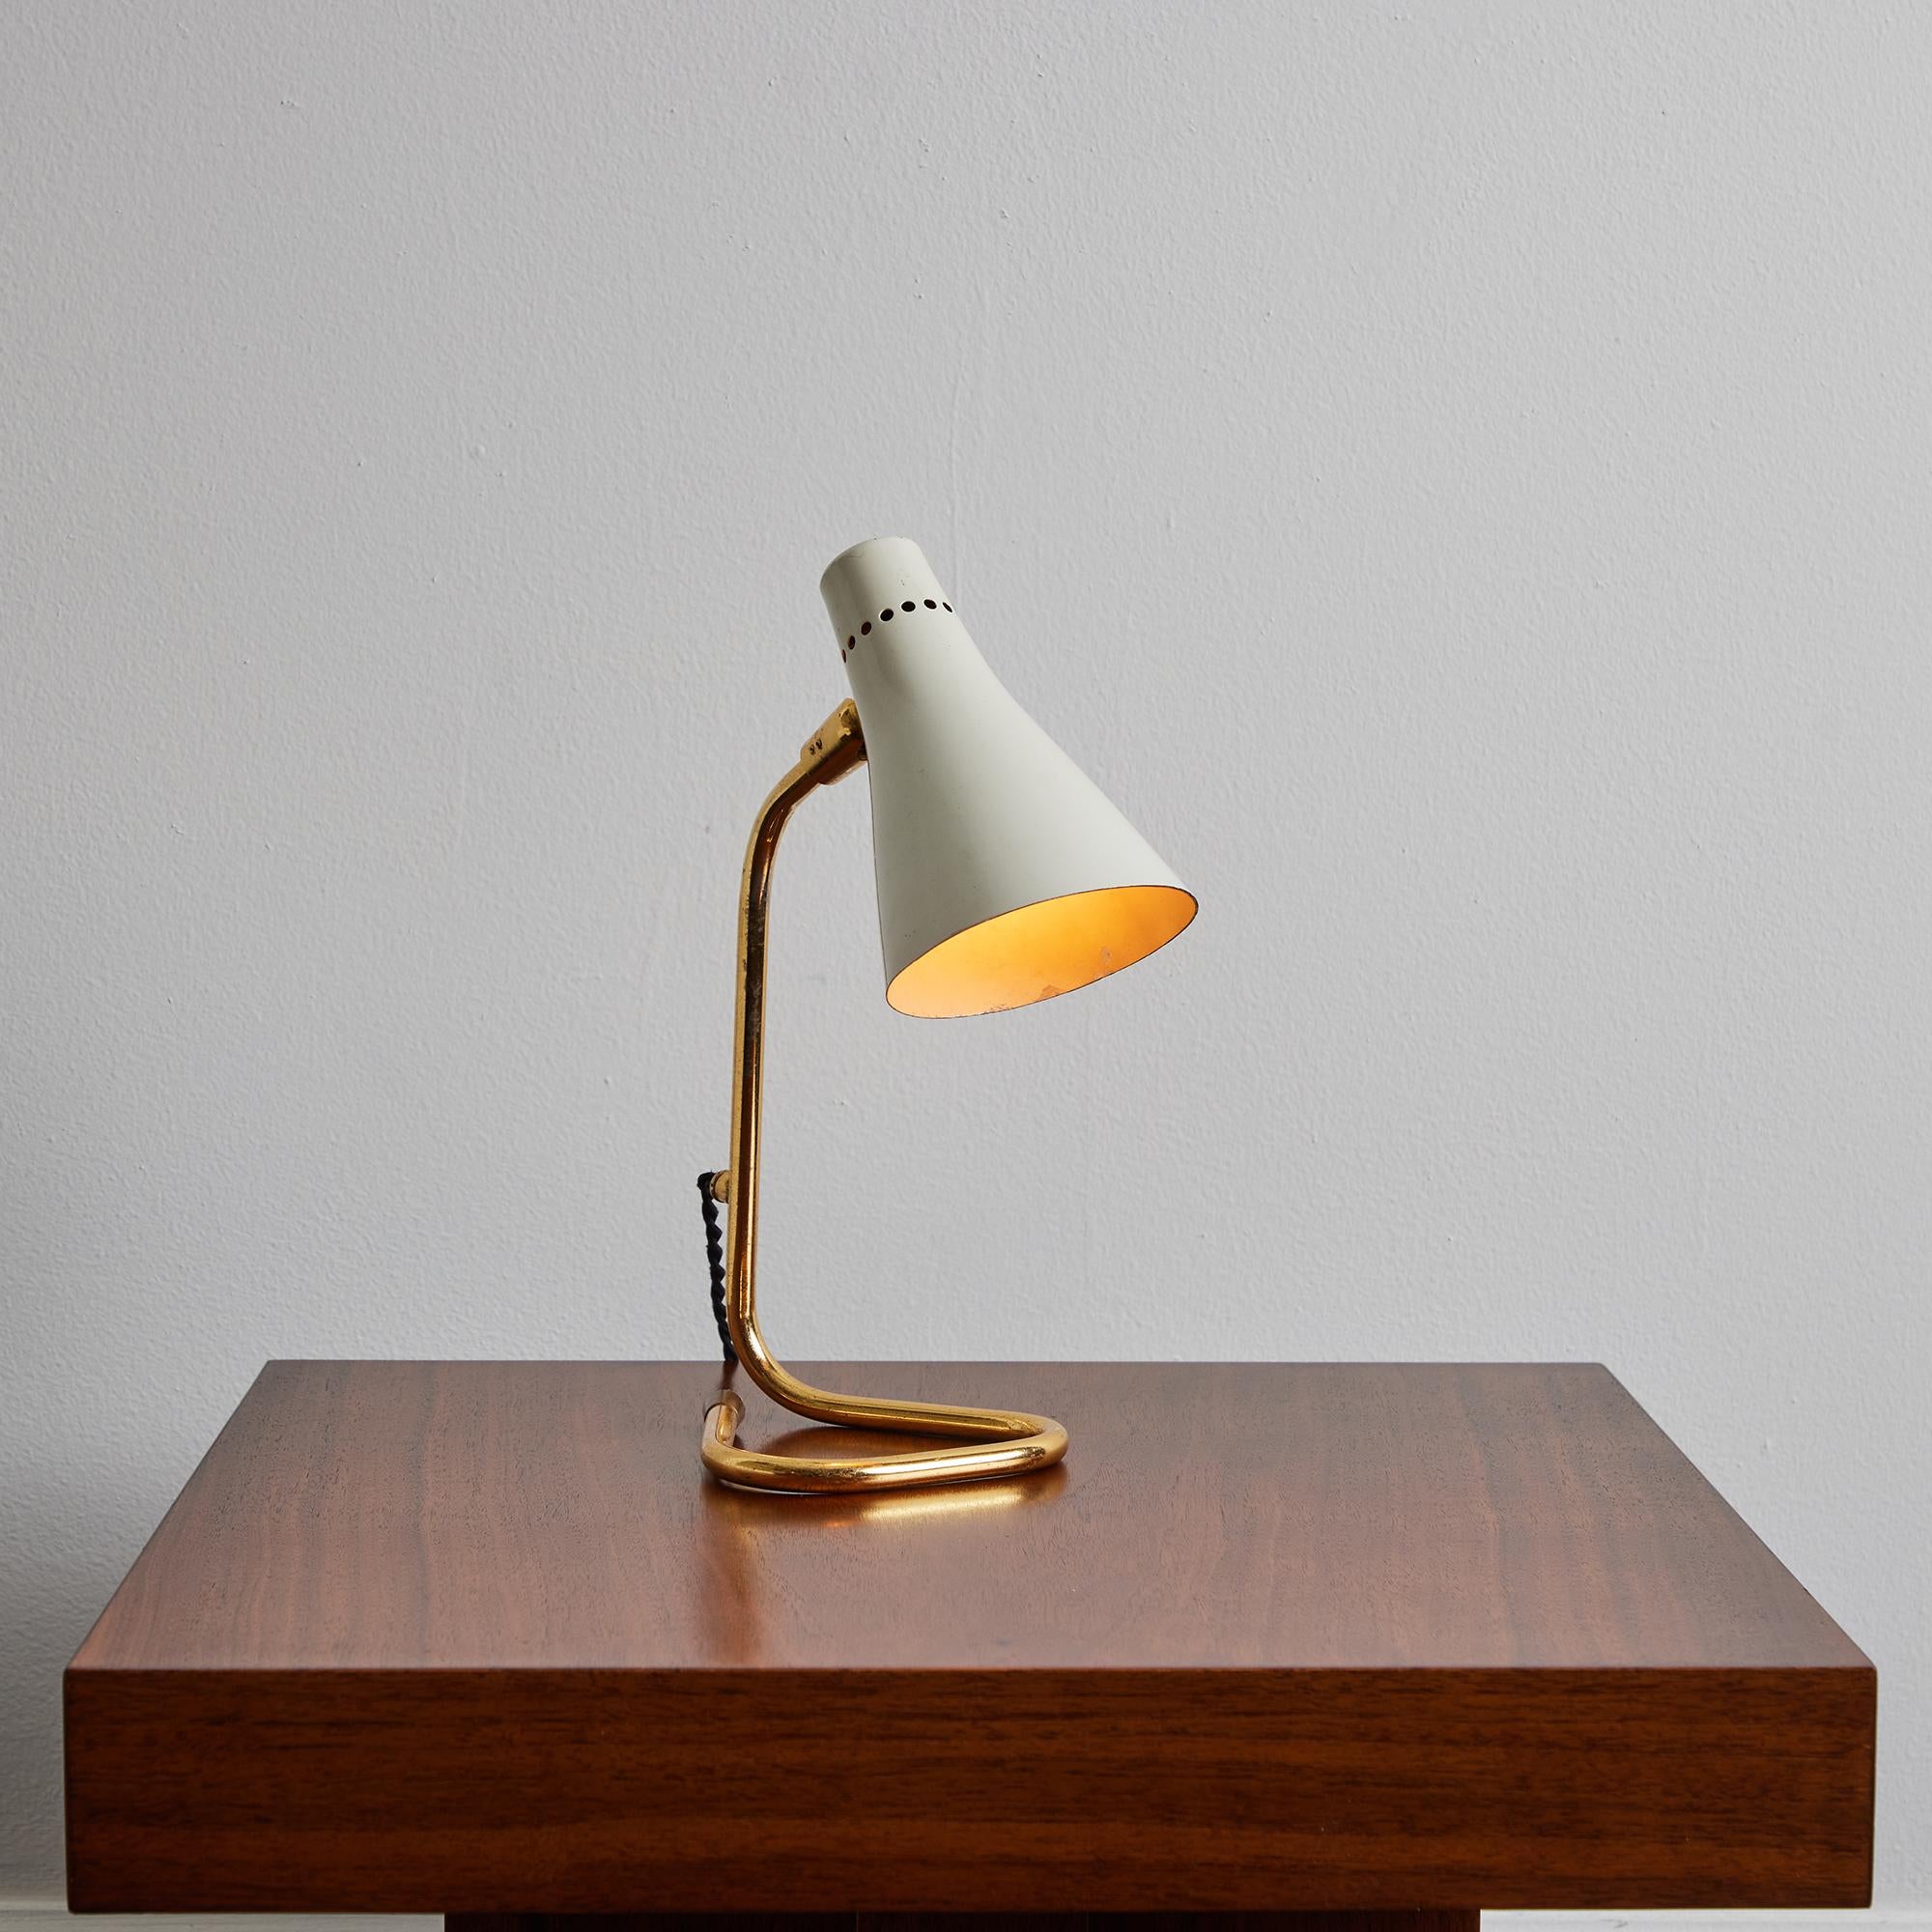 Lampe de table en métal et laiton Giuseppe Ostuni modèle #214 pour O-Luce, années 1950.

Un design sculptural exécuté en métal peint en blanc et en laiton. L'ombrage peut être relevé ou abaissé à la hauteur souhaitée. Rare lampe de table de belle